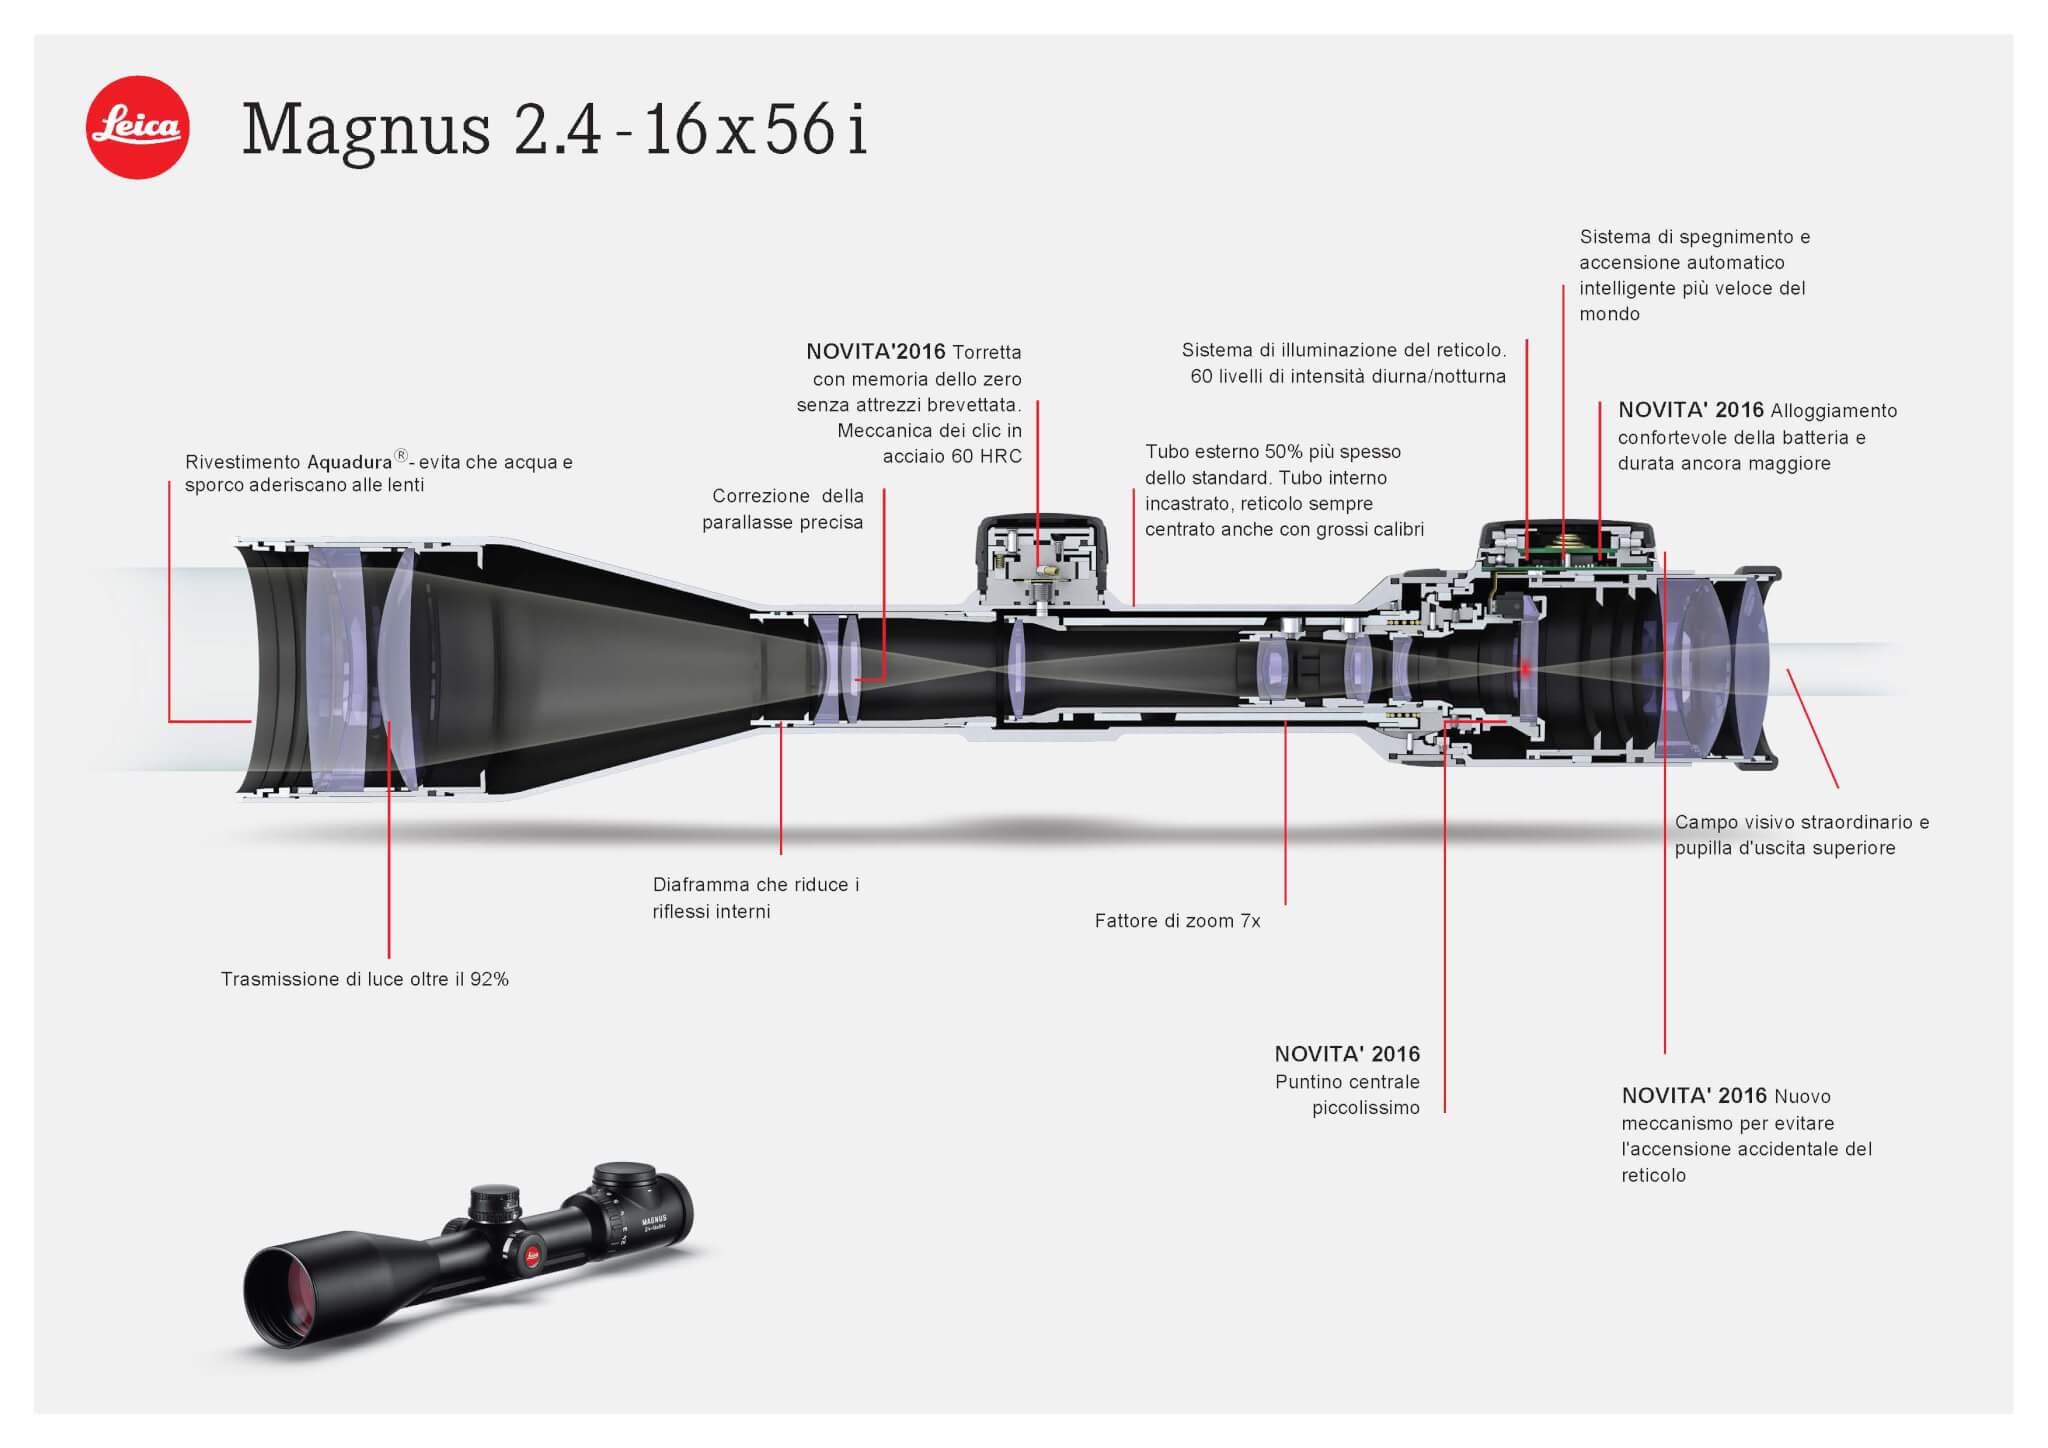 Il Magnus "i", qui nel modello da 56mm di obiettivo, con le novità e tutte le caratteristiche di eccellenza già presenti nella serie Magnus